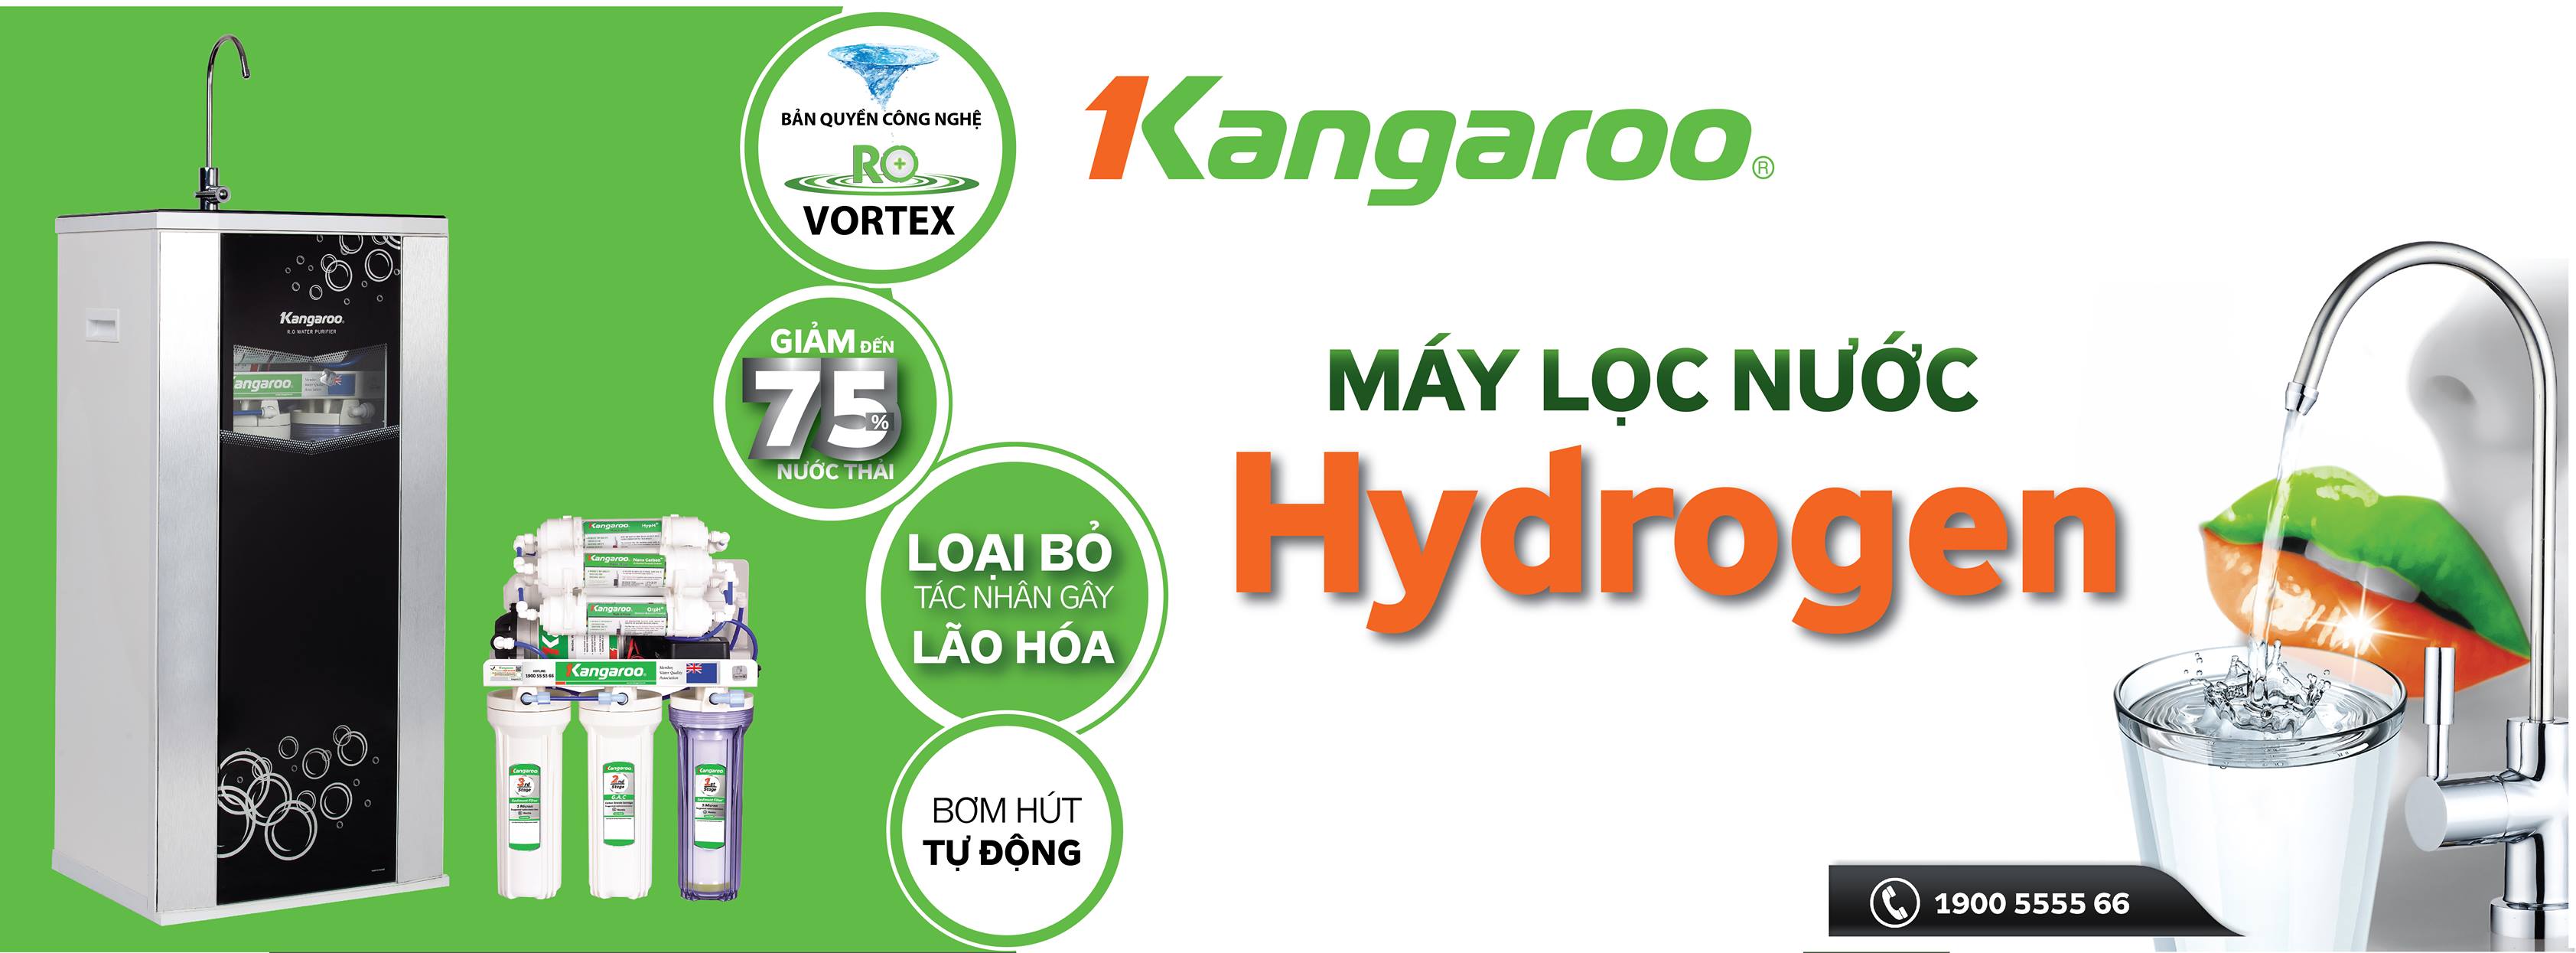 máy lọc nước kangaroo hydrogen KG100HQ